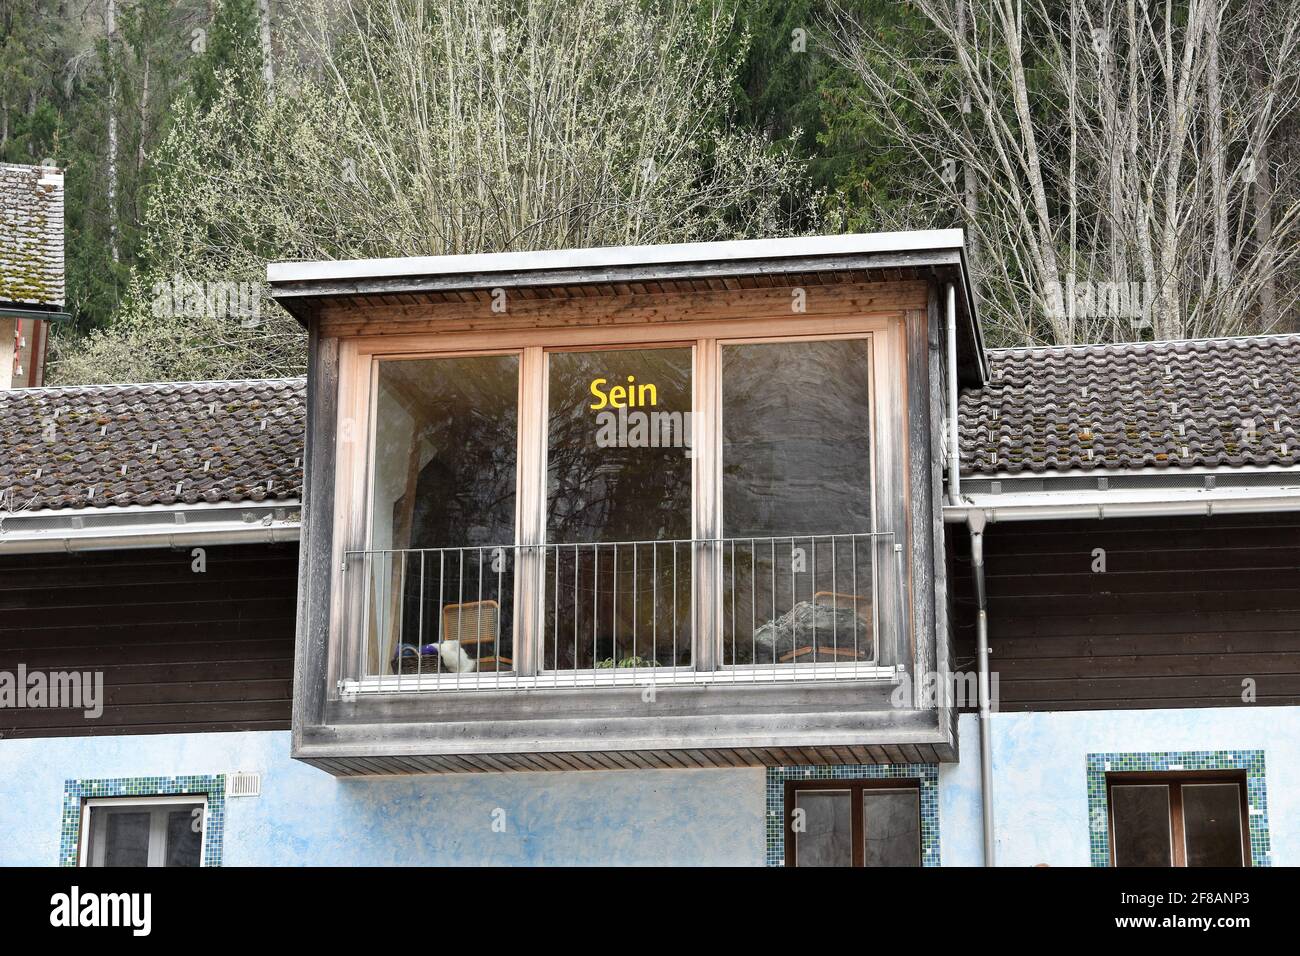 Haus mit französischem Fenster und Inschrift in deutscher Sprache, die sein oder sein bedeutet. Stockfoto